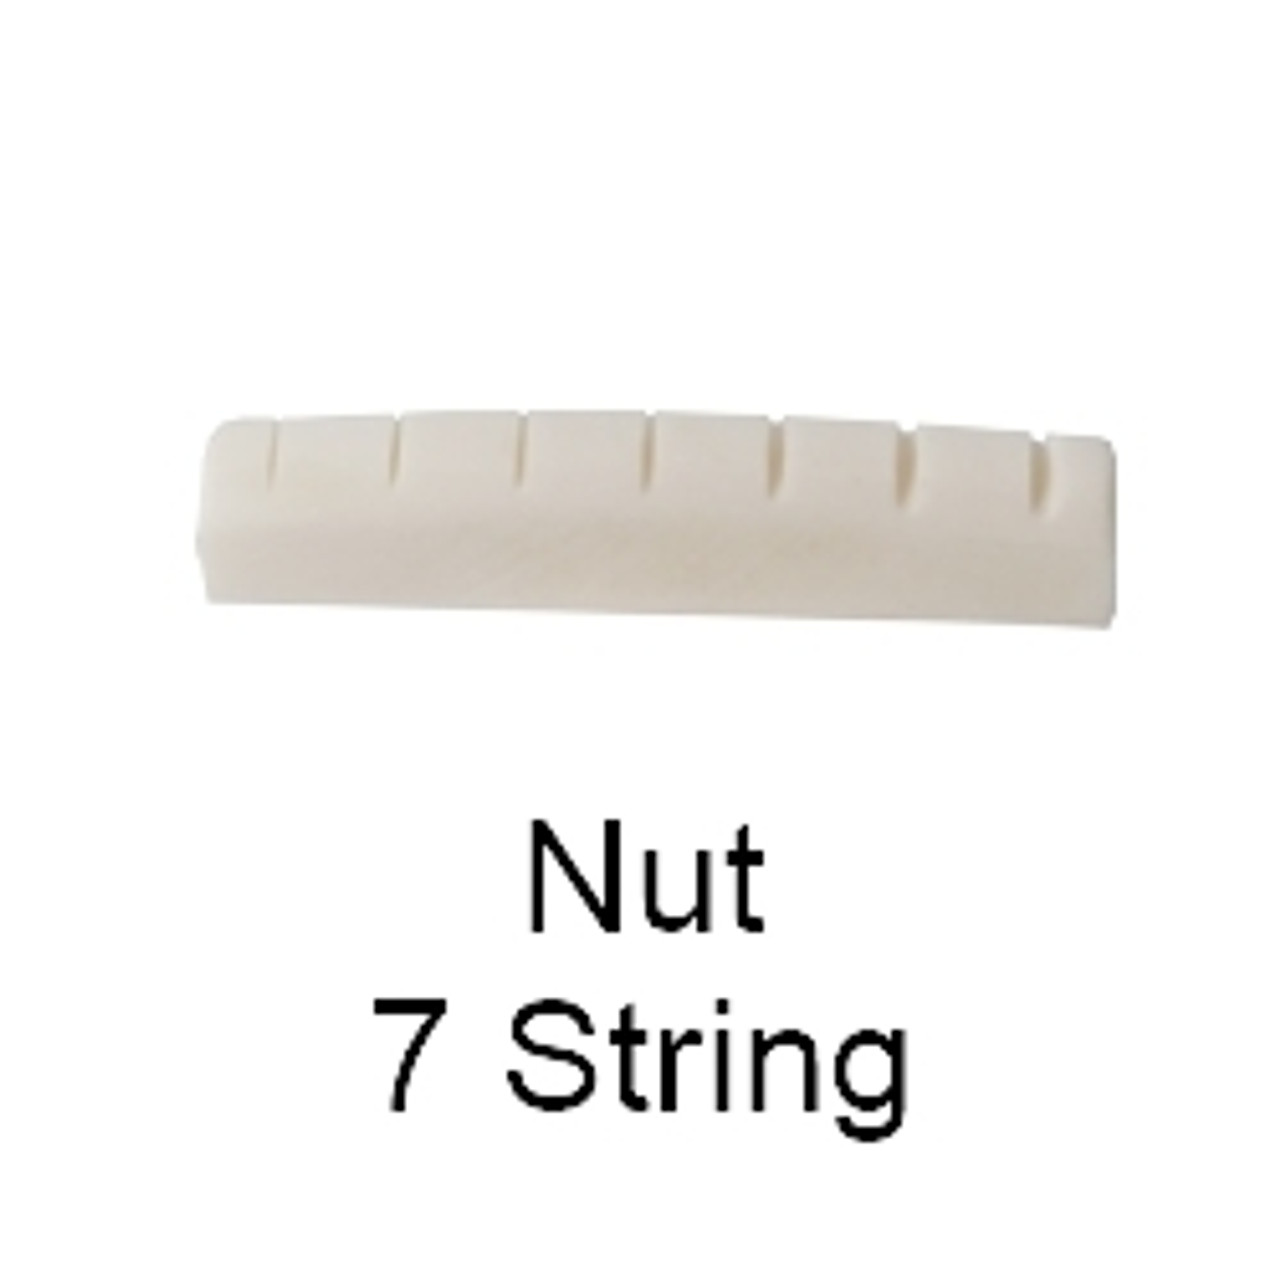 7 String